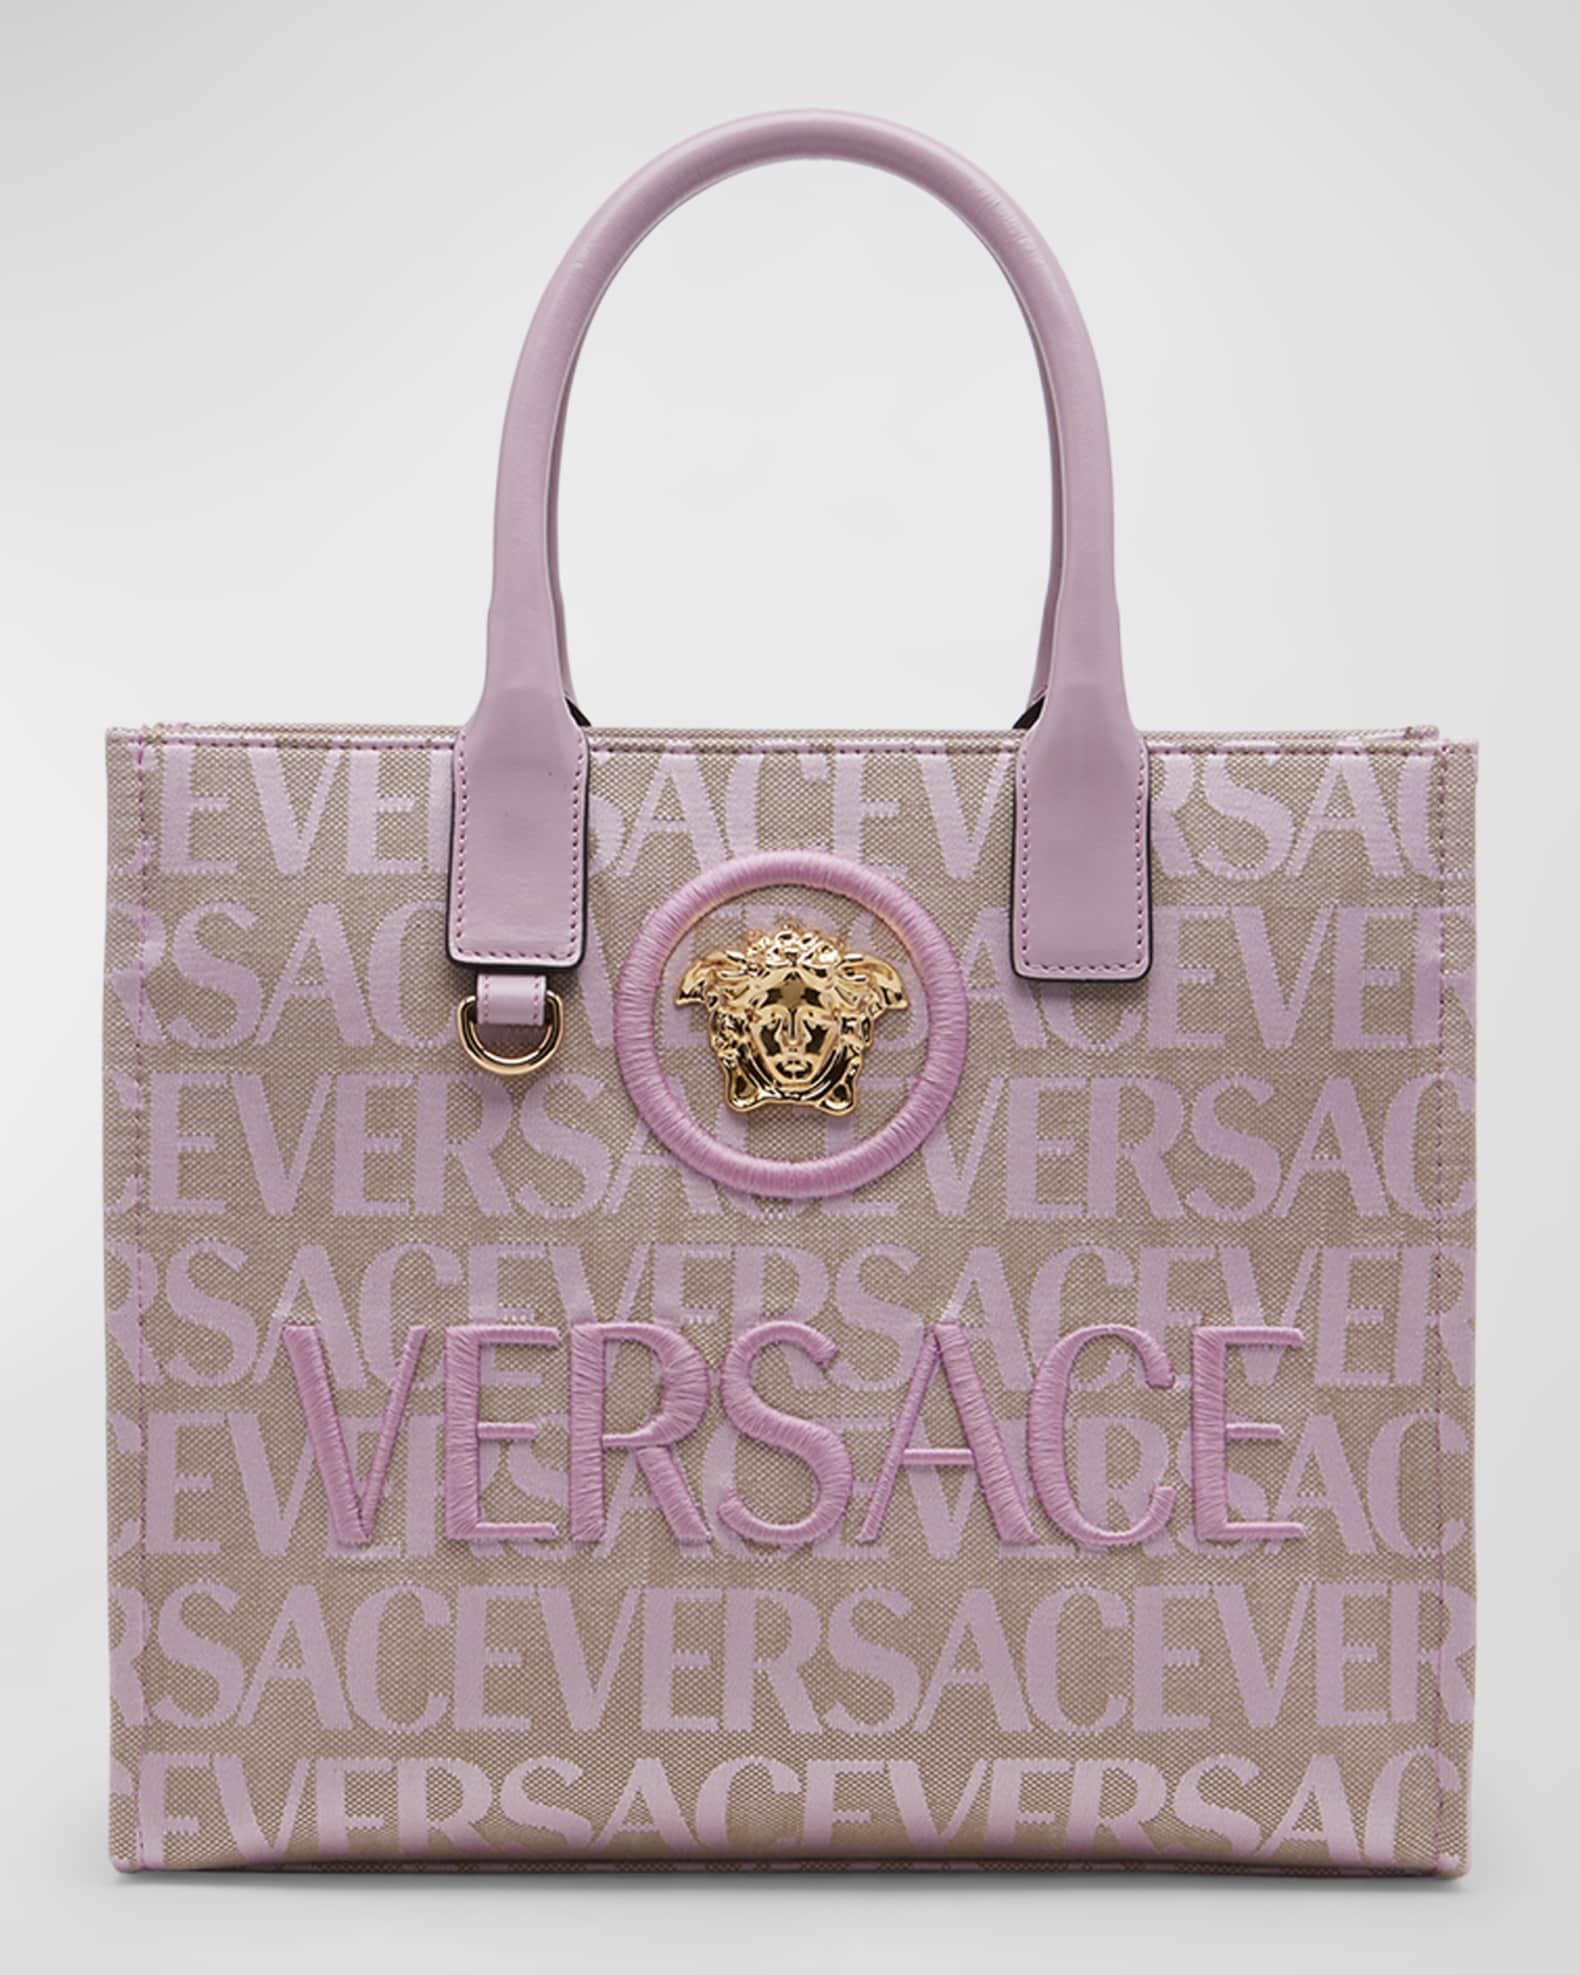 Versace Studded La Medusa Large Tote Bag for Women